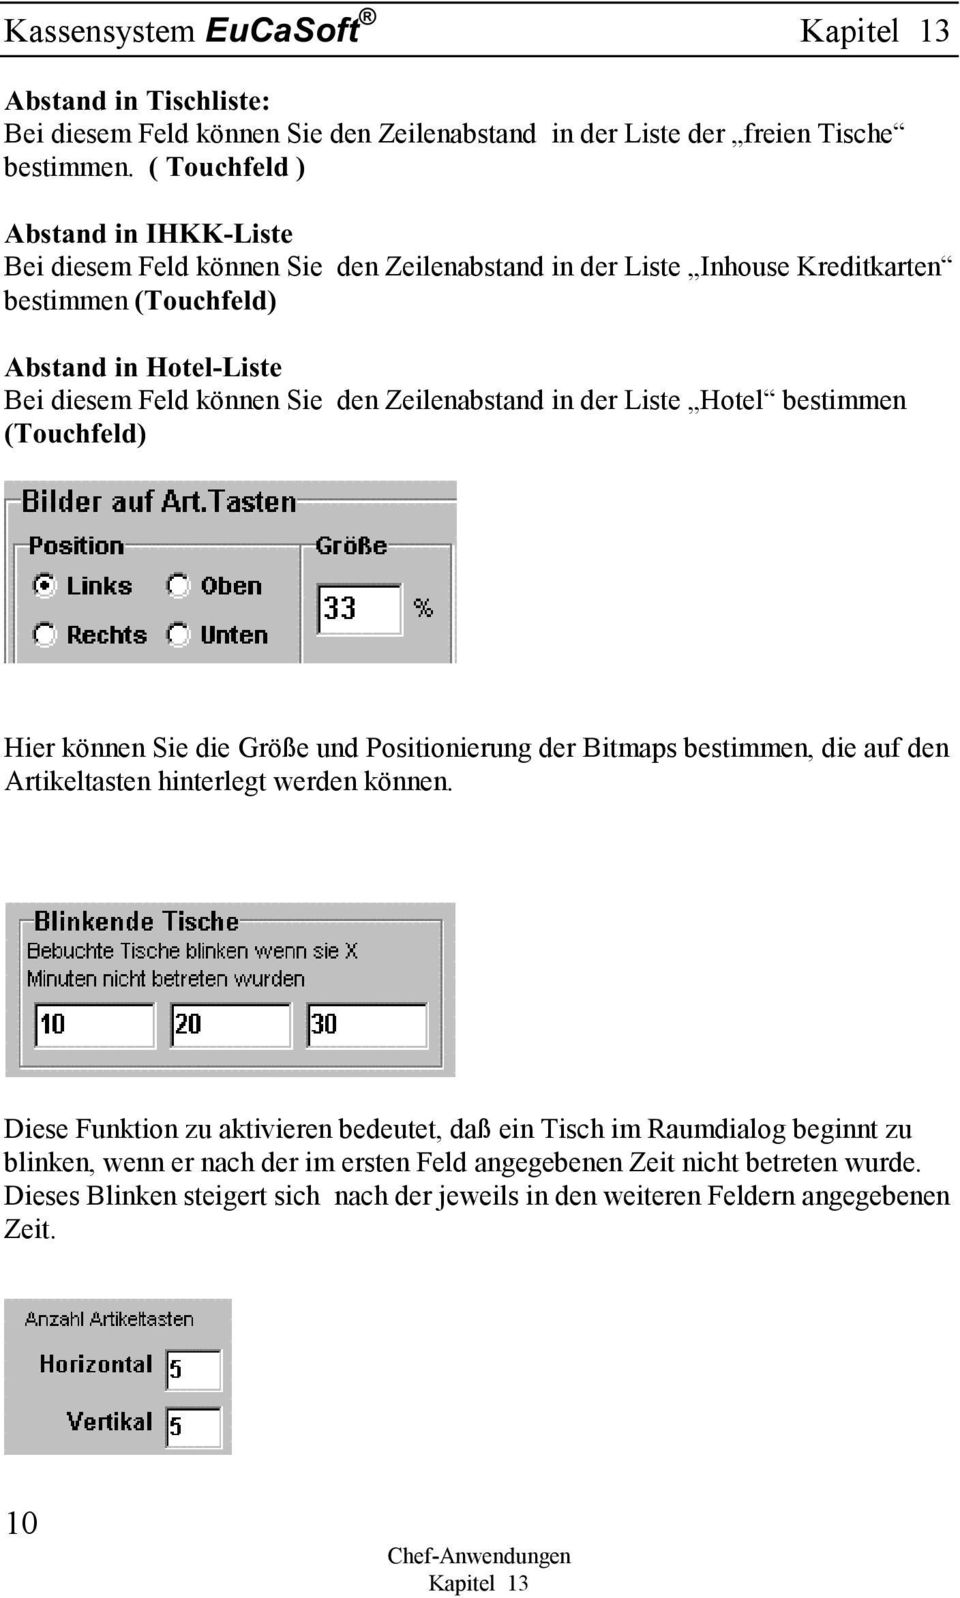 Liste Hotel bestimmen 7RXFKIHOG Hier können Sie die Größe und Positionierung der Bitmaps bestimmen, die auf den Artikeltasten hinterlegt werden können.